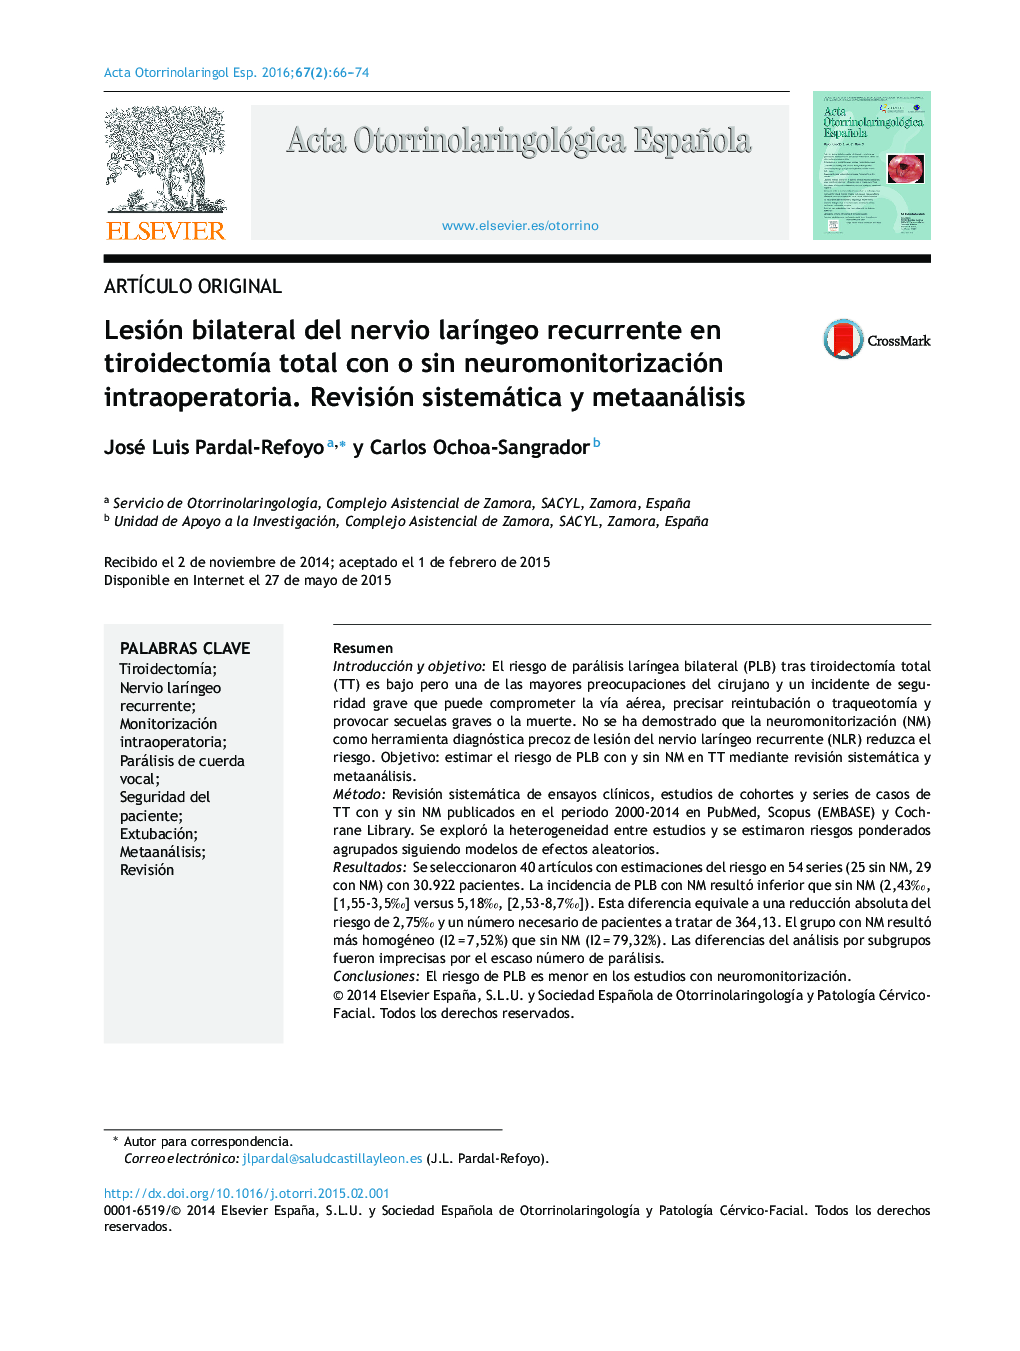 Lesión bilateral del nervio laríngeo recurrente en tiroidectomía total con o sin neuromonitorización intraoperatoria. Revisión sistemática y metaanálisis